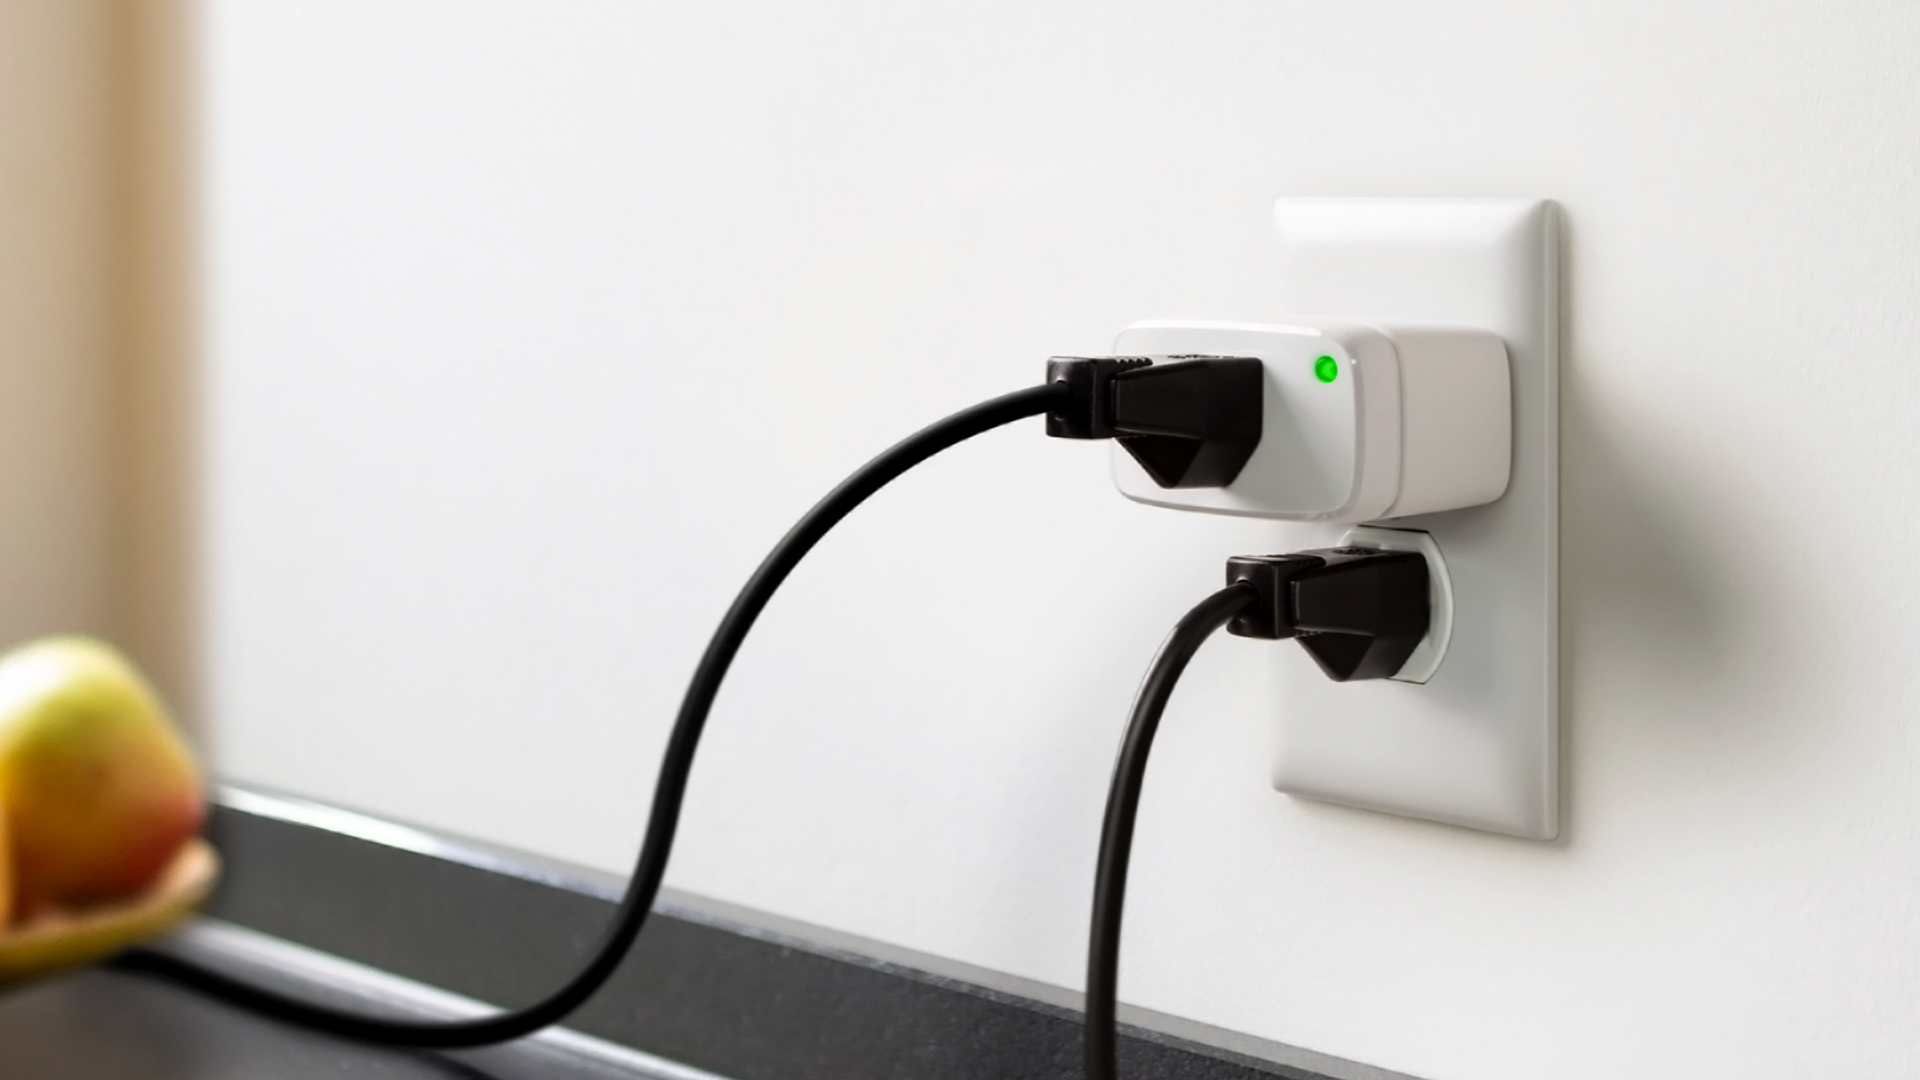 The Eve Energy smart plug